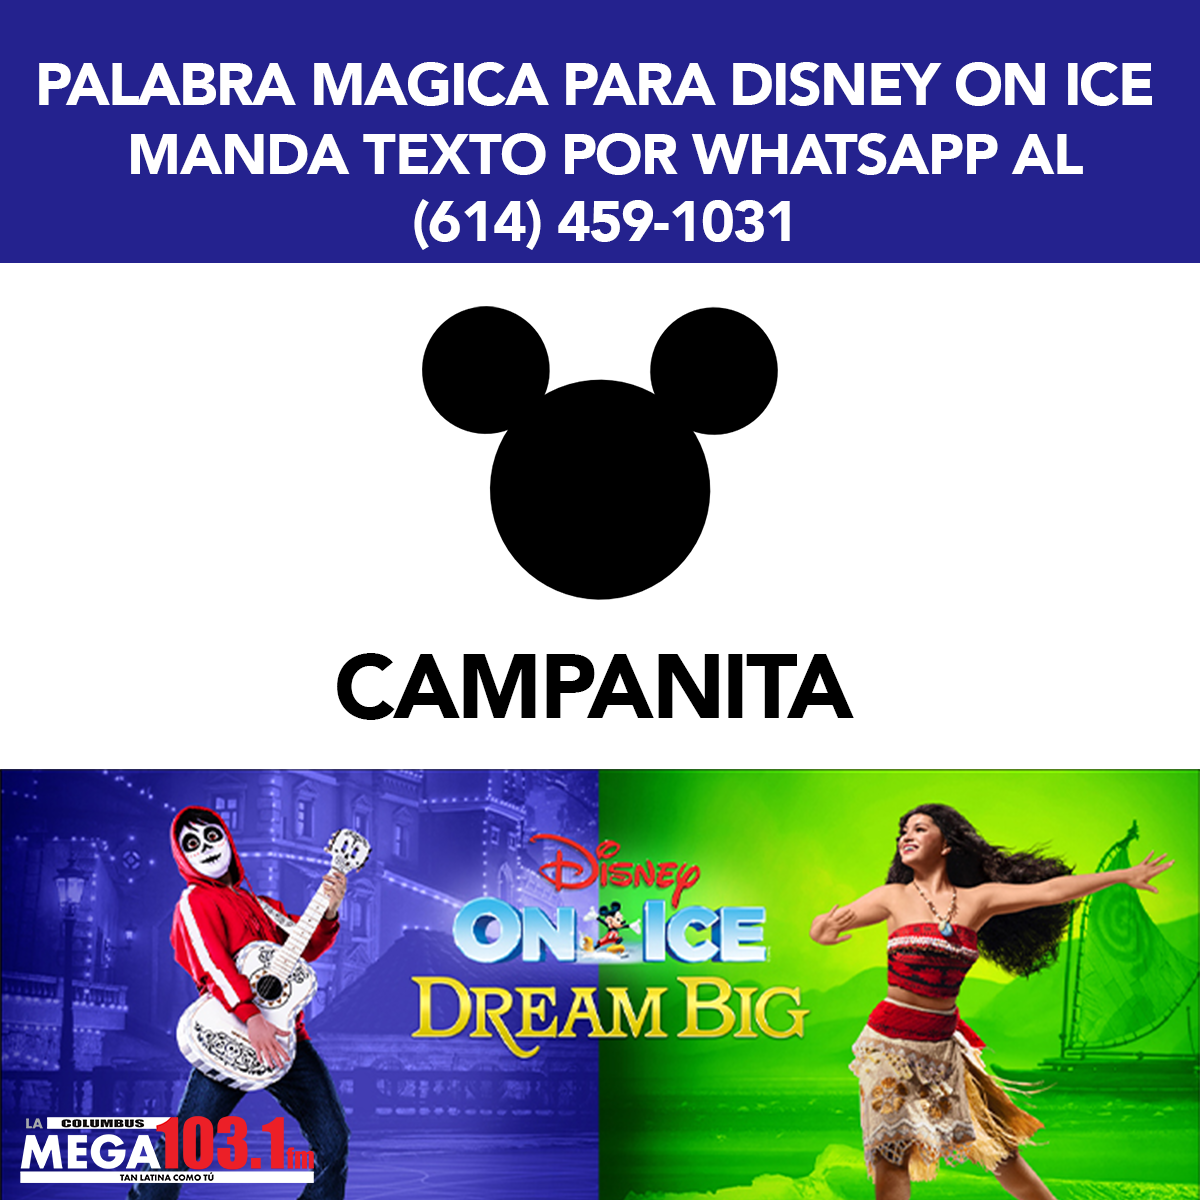 Palabra Mágica para DISNEY ON ICE "CAMPANITA"